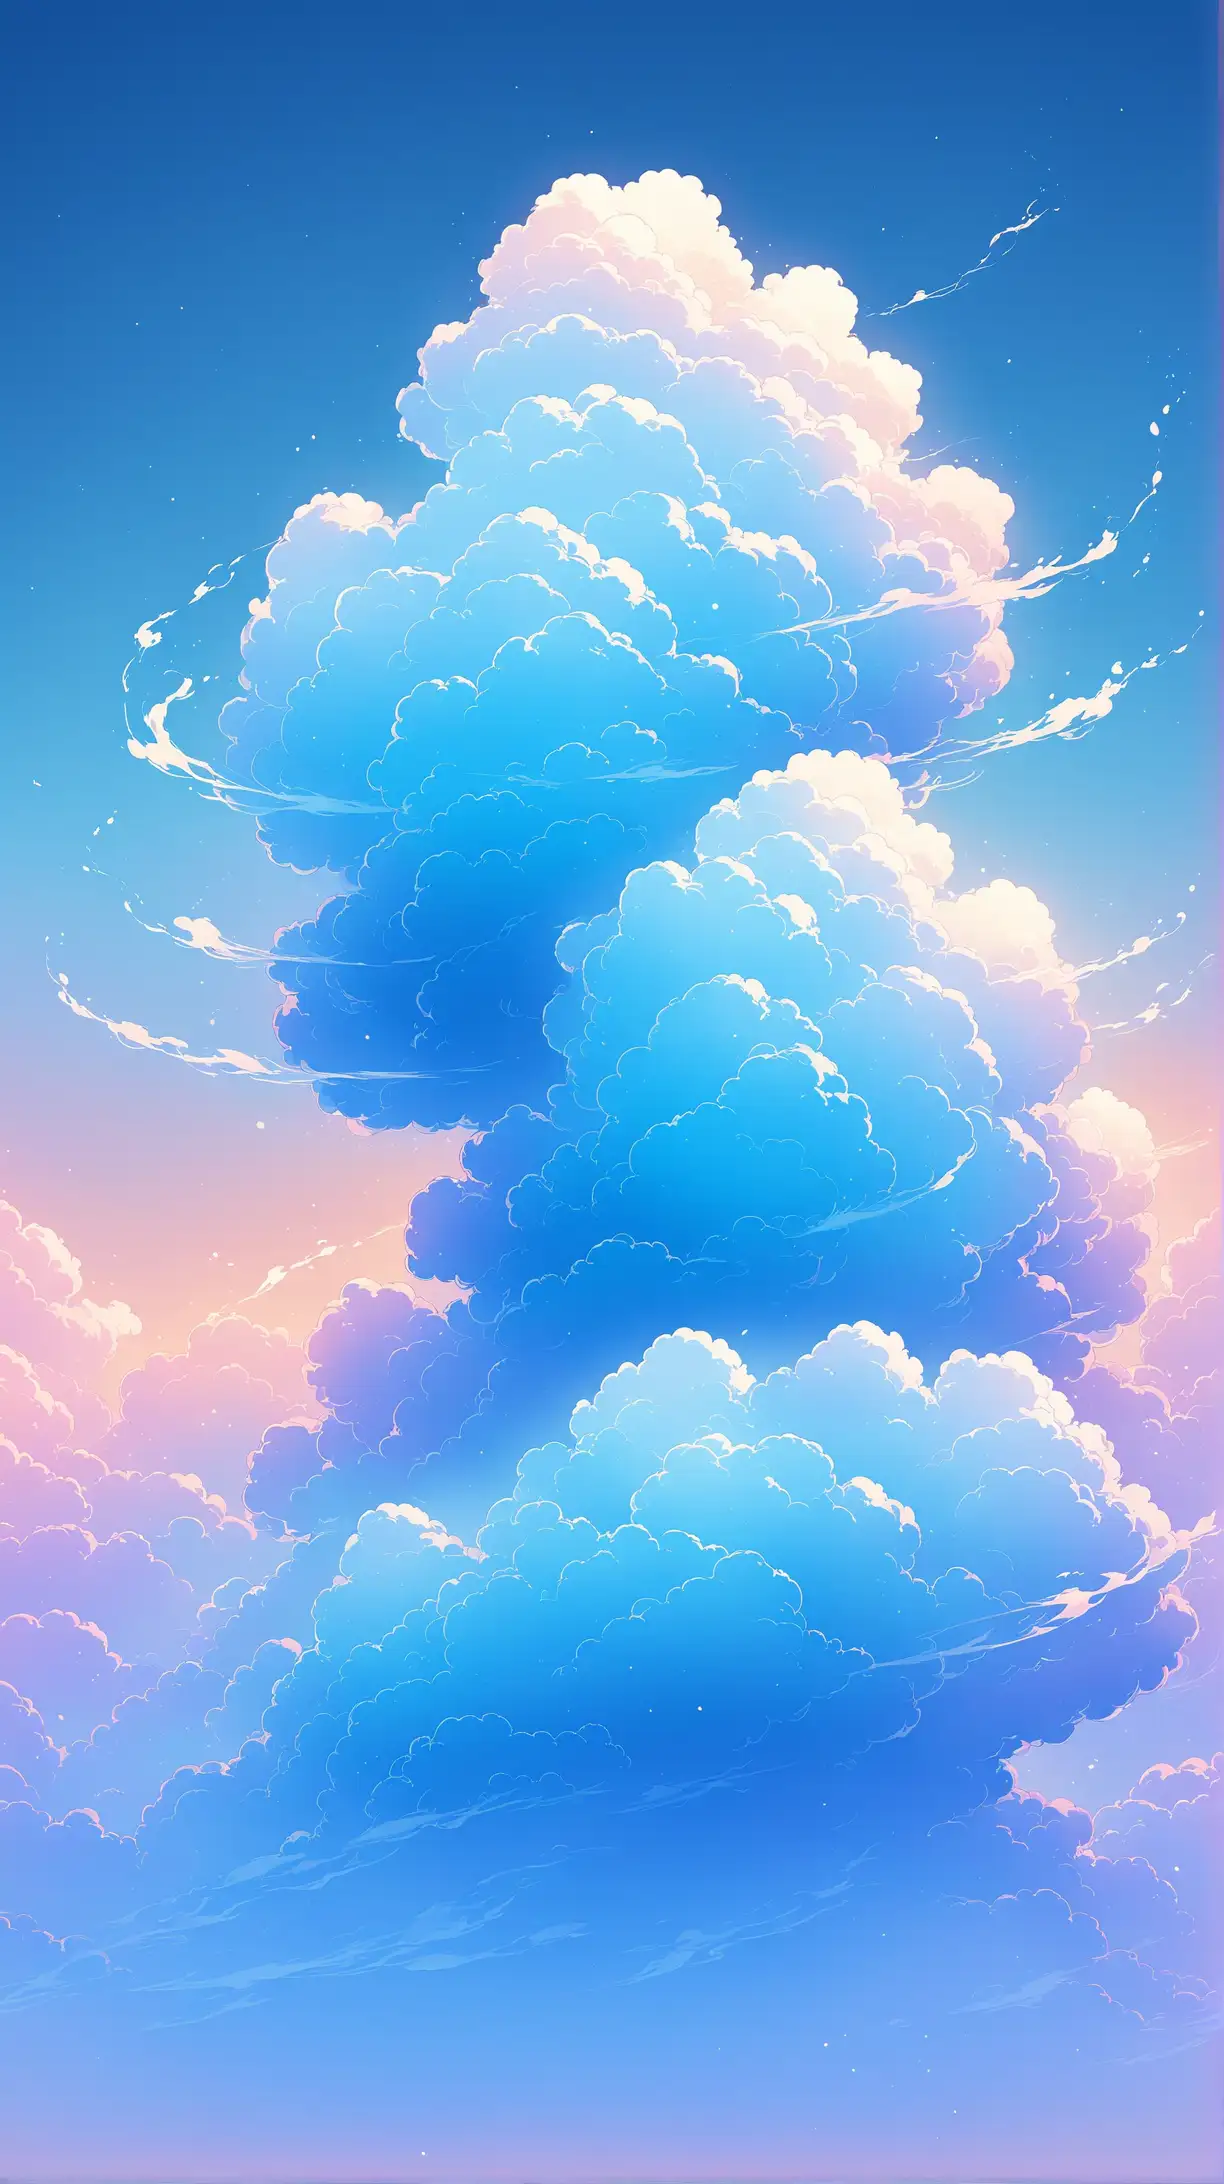 Ethereal Gradient Blue Smoke Cloud Floating in Surreal Atmosphere